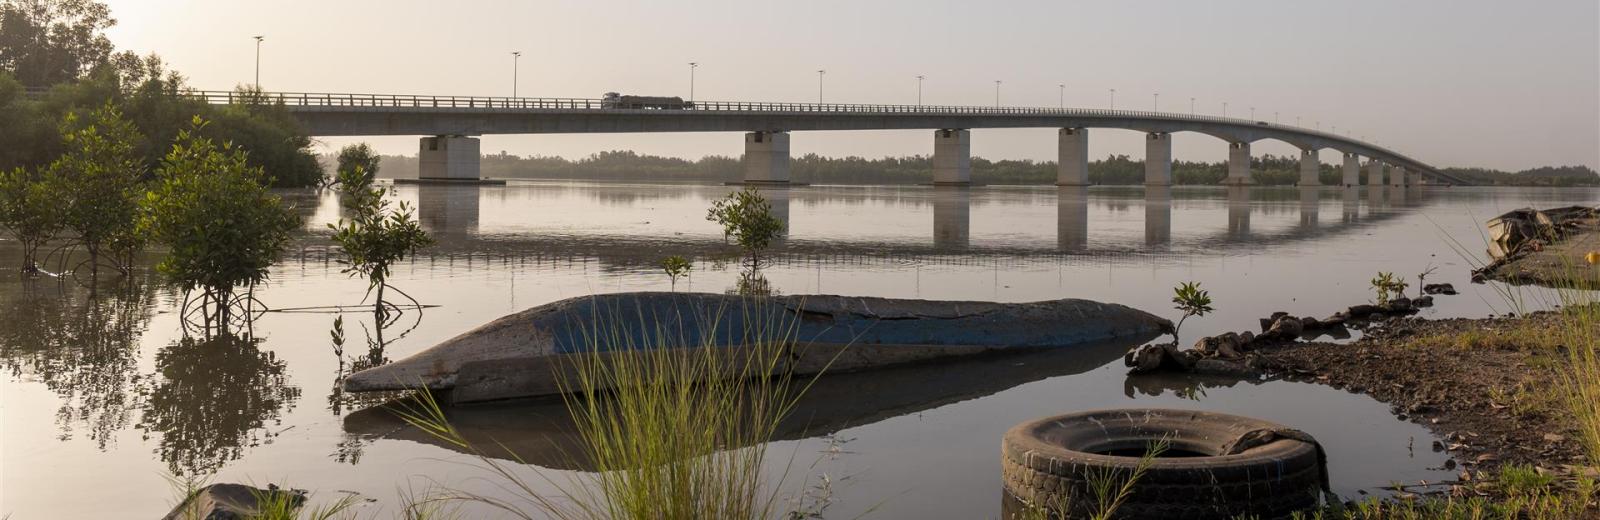 La gestión integrada de los recursos hídricos del río Gambia para el desarrollo sostenible de la región es una cuestión transfronteriza © SDC